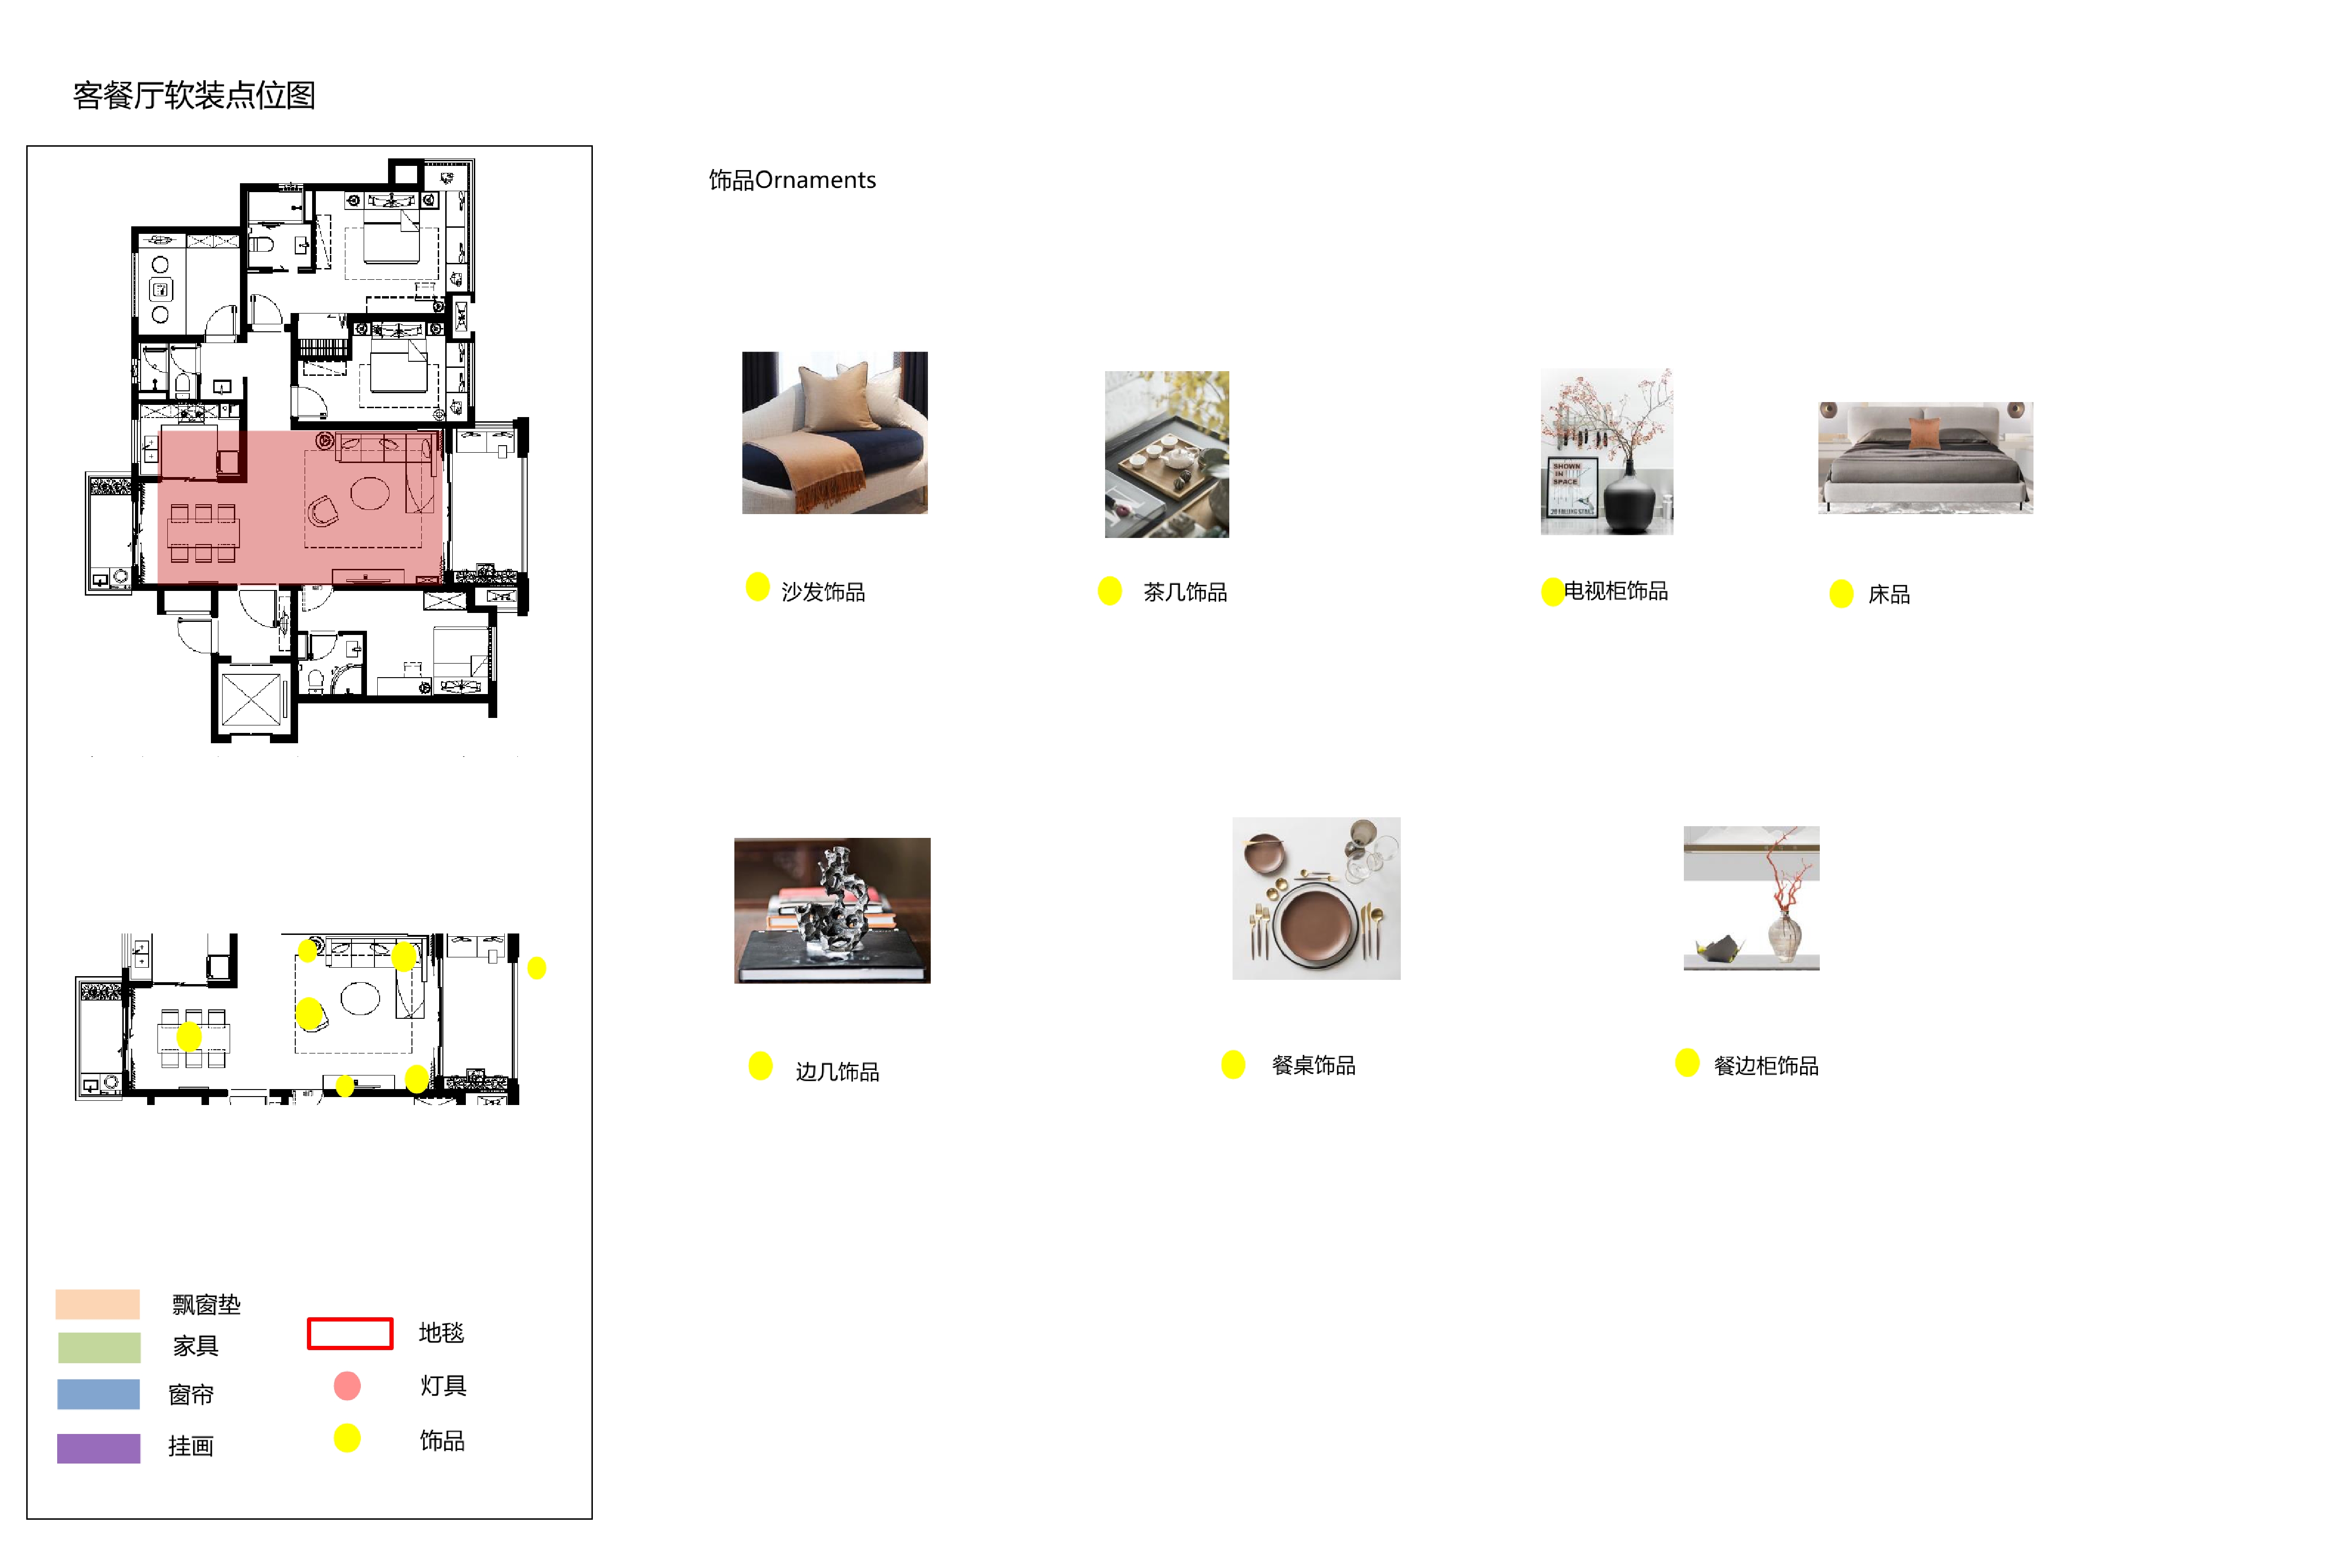 贵州宝能现代中式样板间丨效果图+硬装方案PPT+施工图+物料+水电+软装方案-20